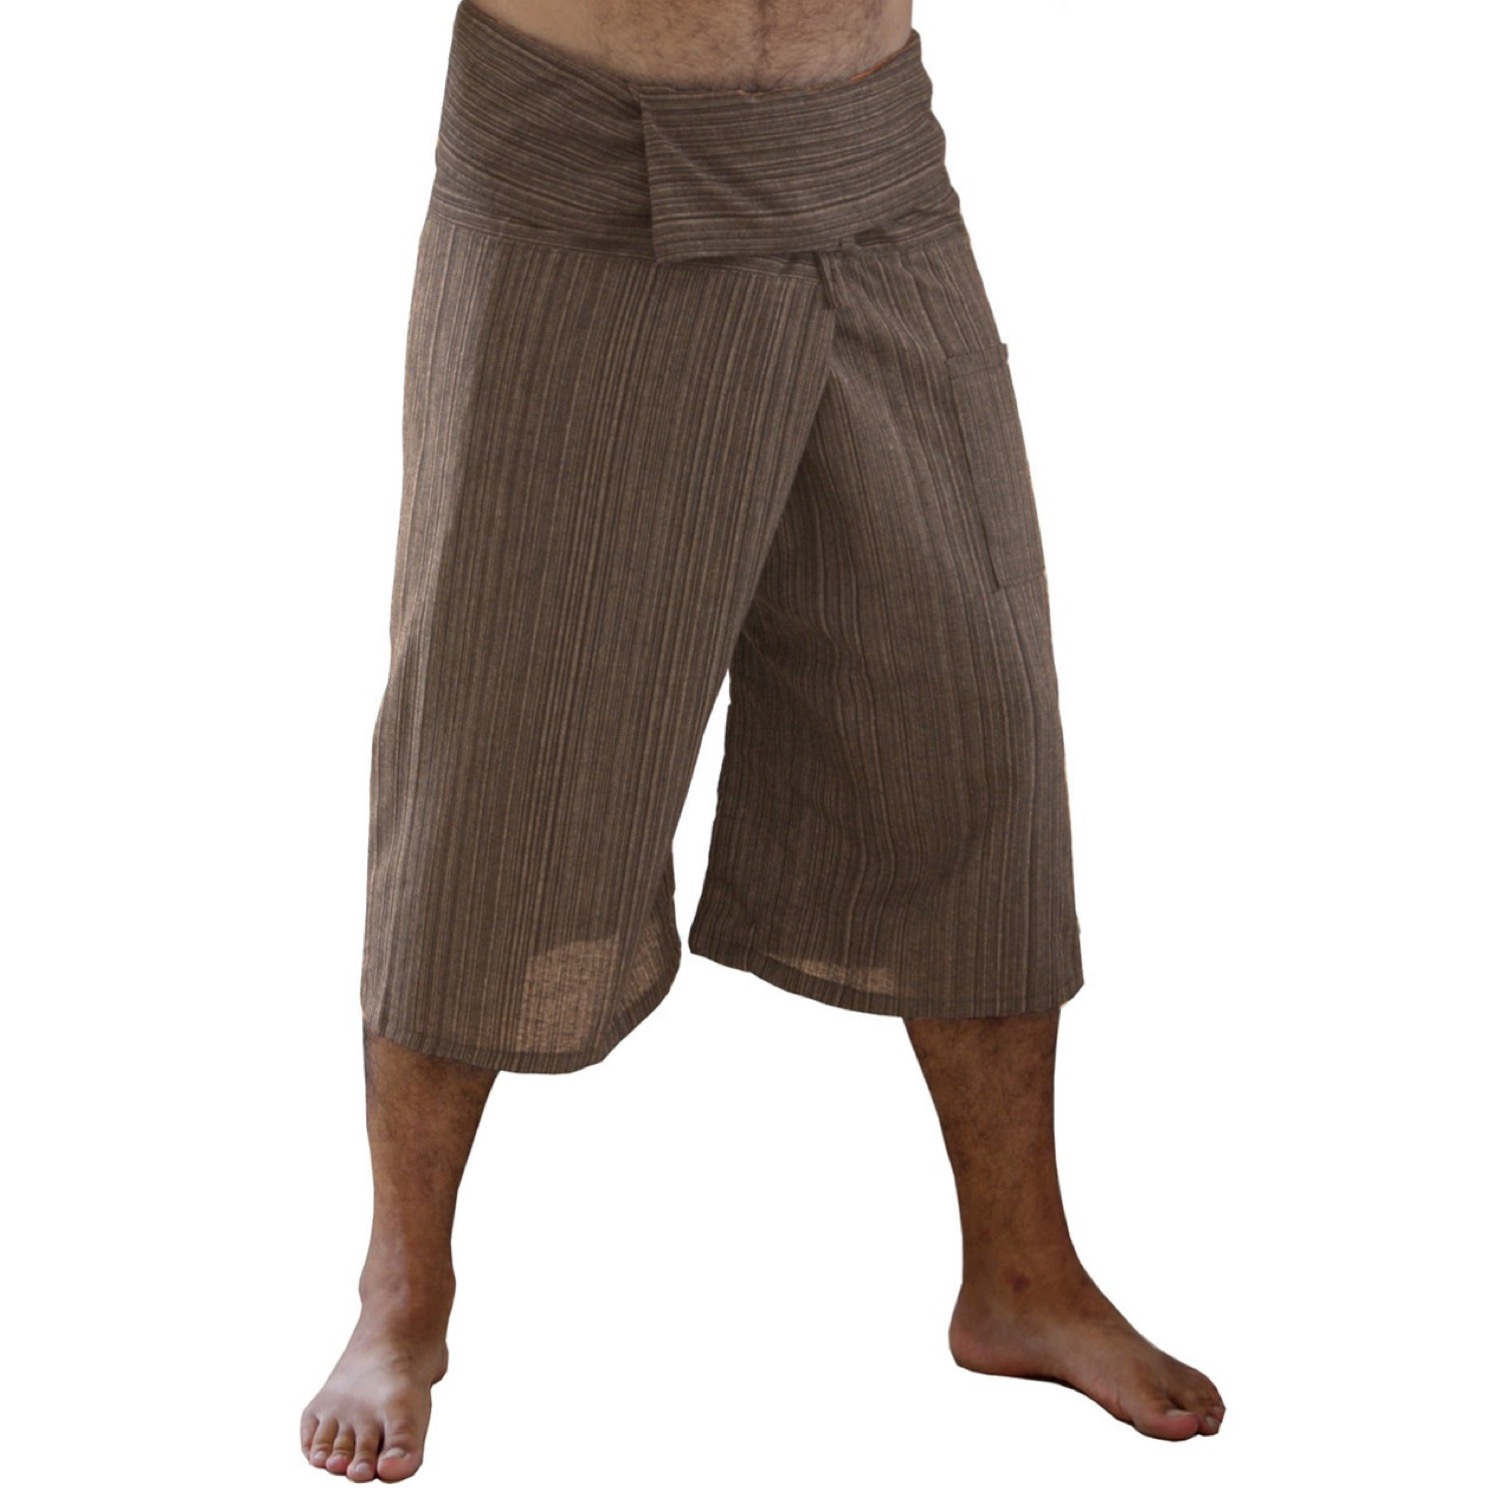 YOGA Massage Thai Fisherman Pants Short Long Cotton Wrap For Men & Women Unisex 